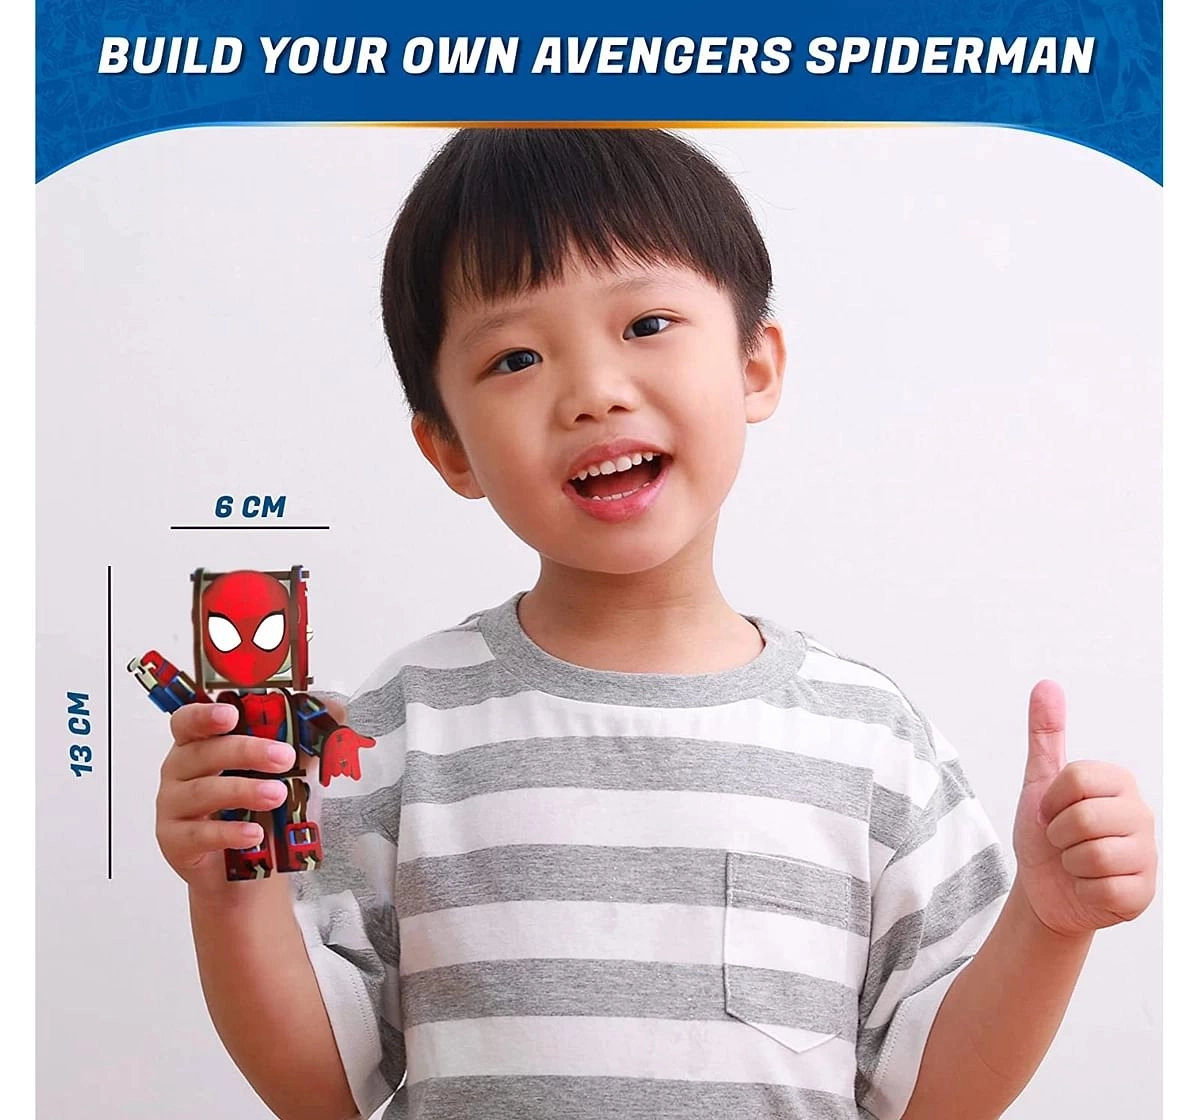 Skillmatics Buildable Marvel Spiderman Multicolor 8Y+